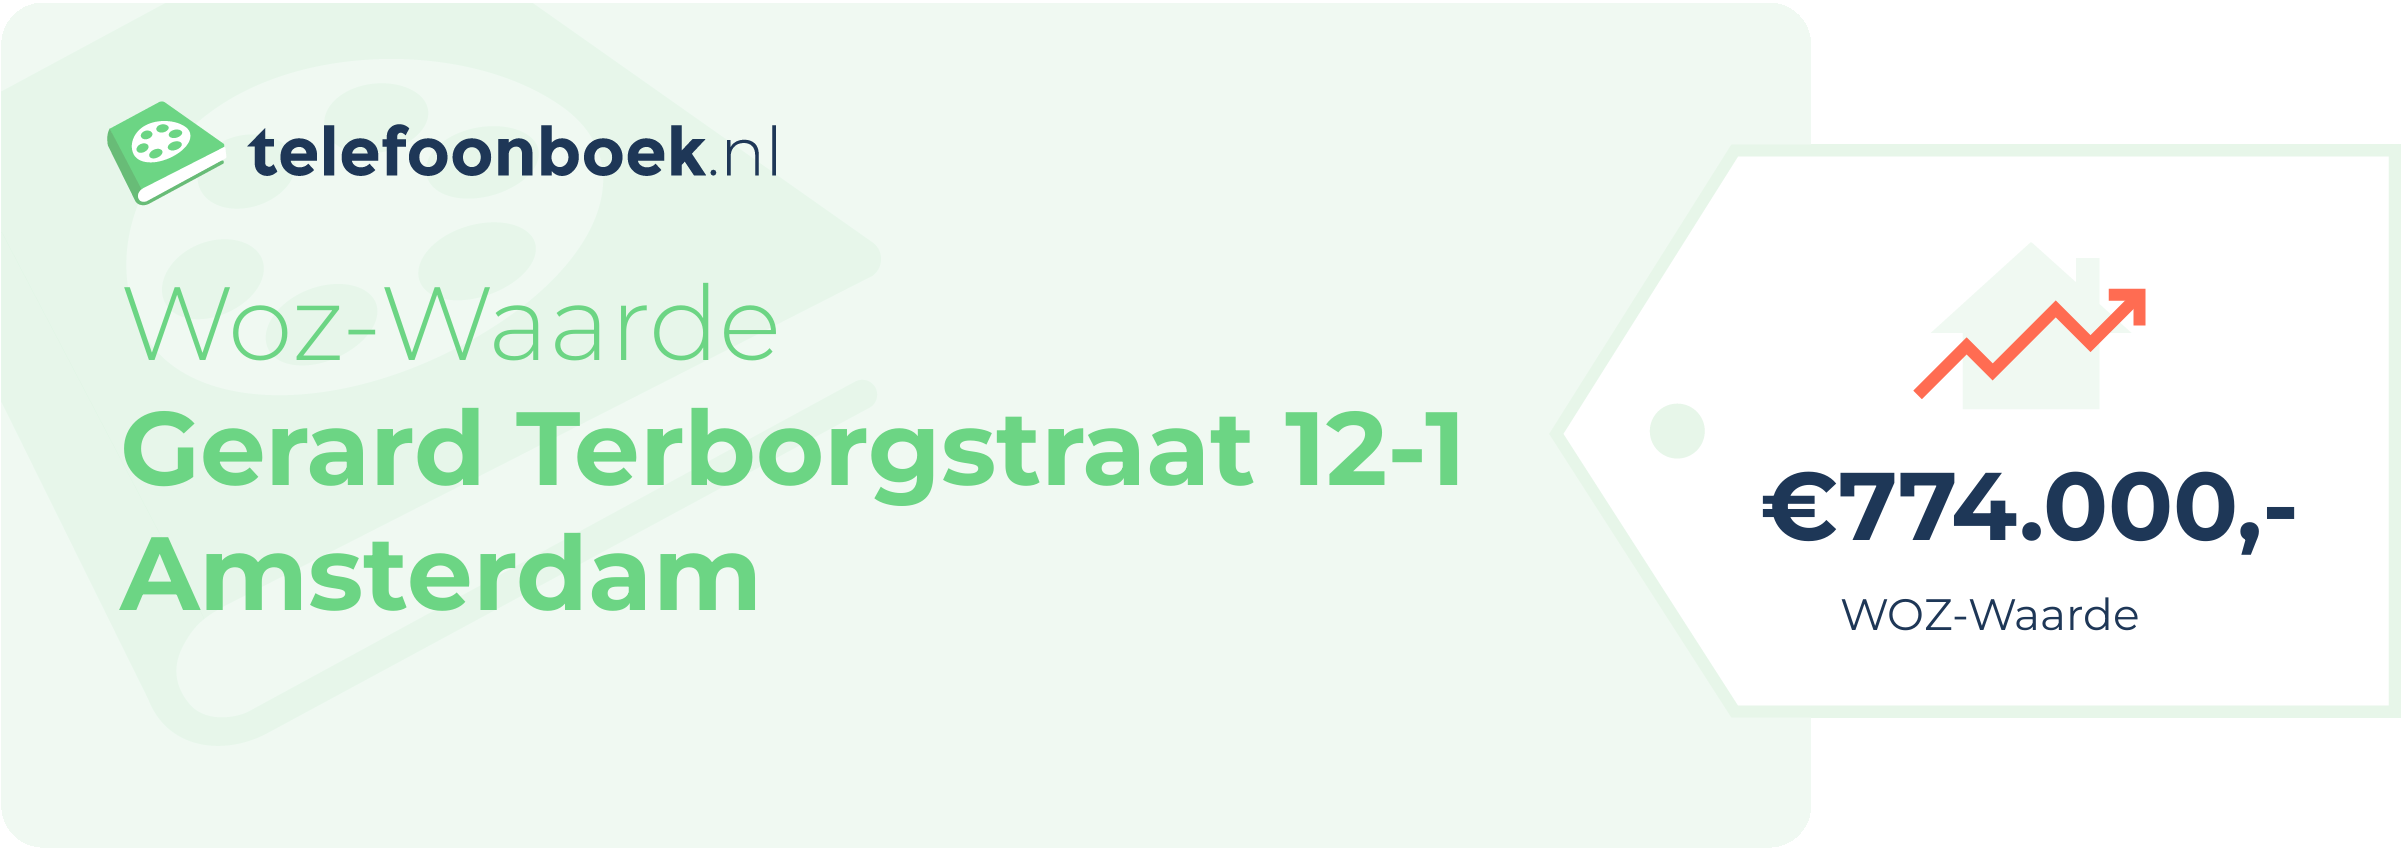 WOZ-waarde Gerard Terborgstraat 12-1 Amsterdam